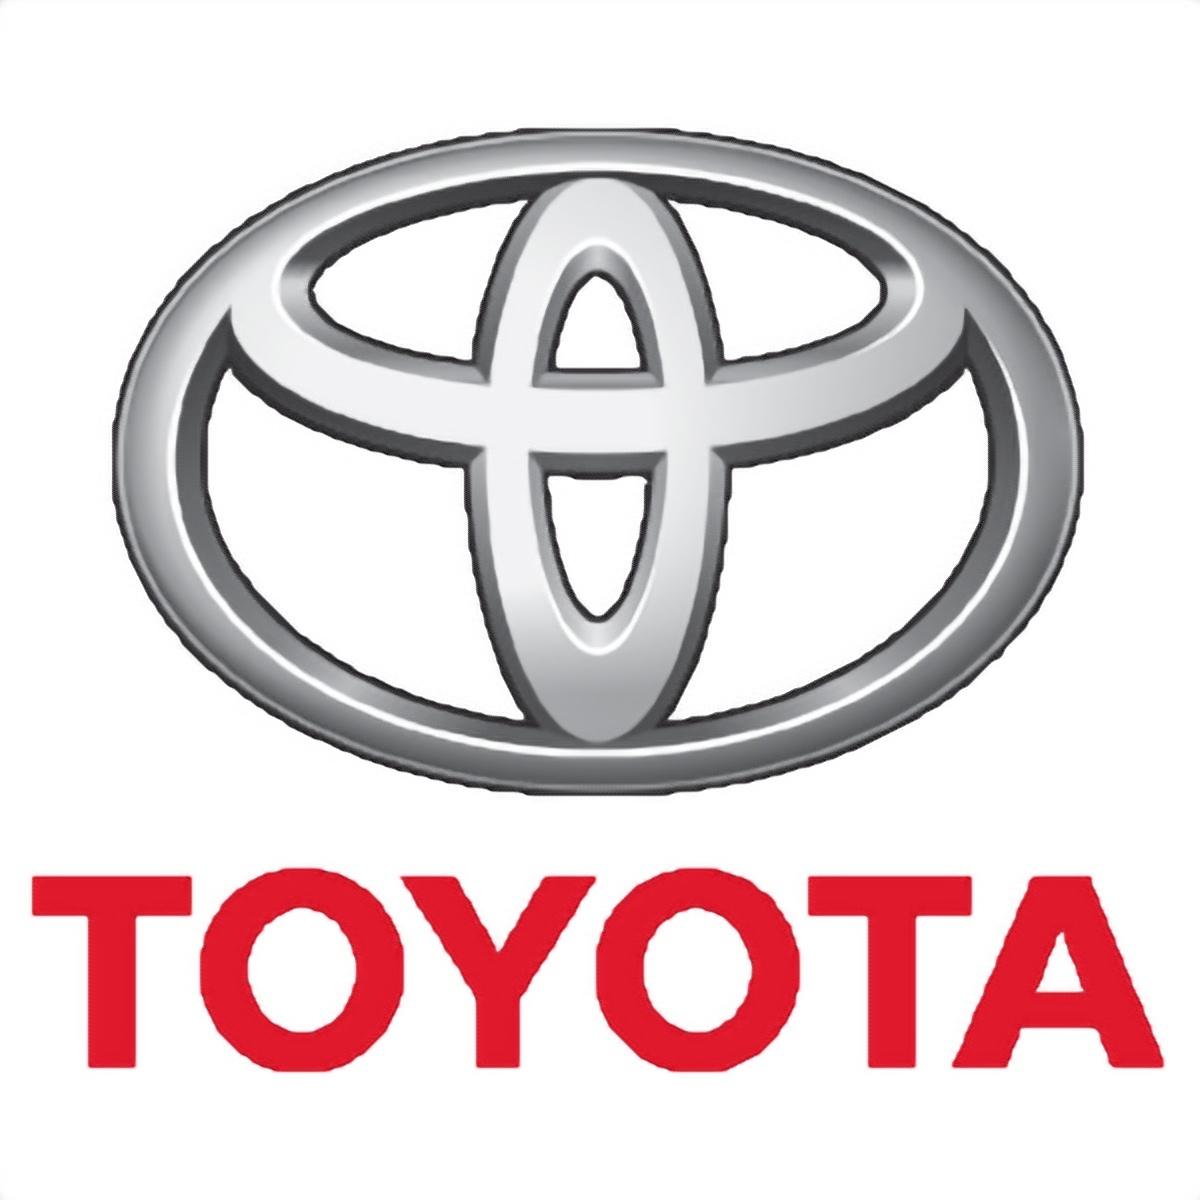 Toyota - Adl - Le Crès     Le Crès